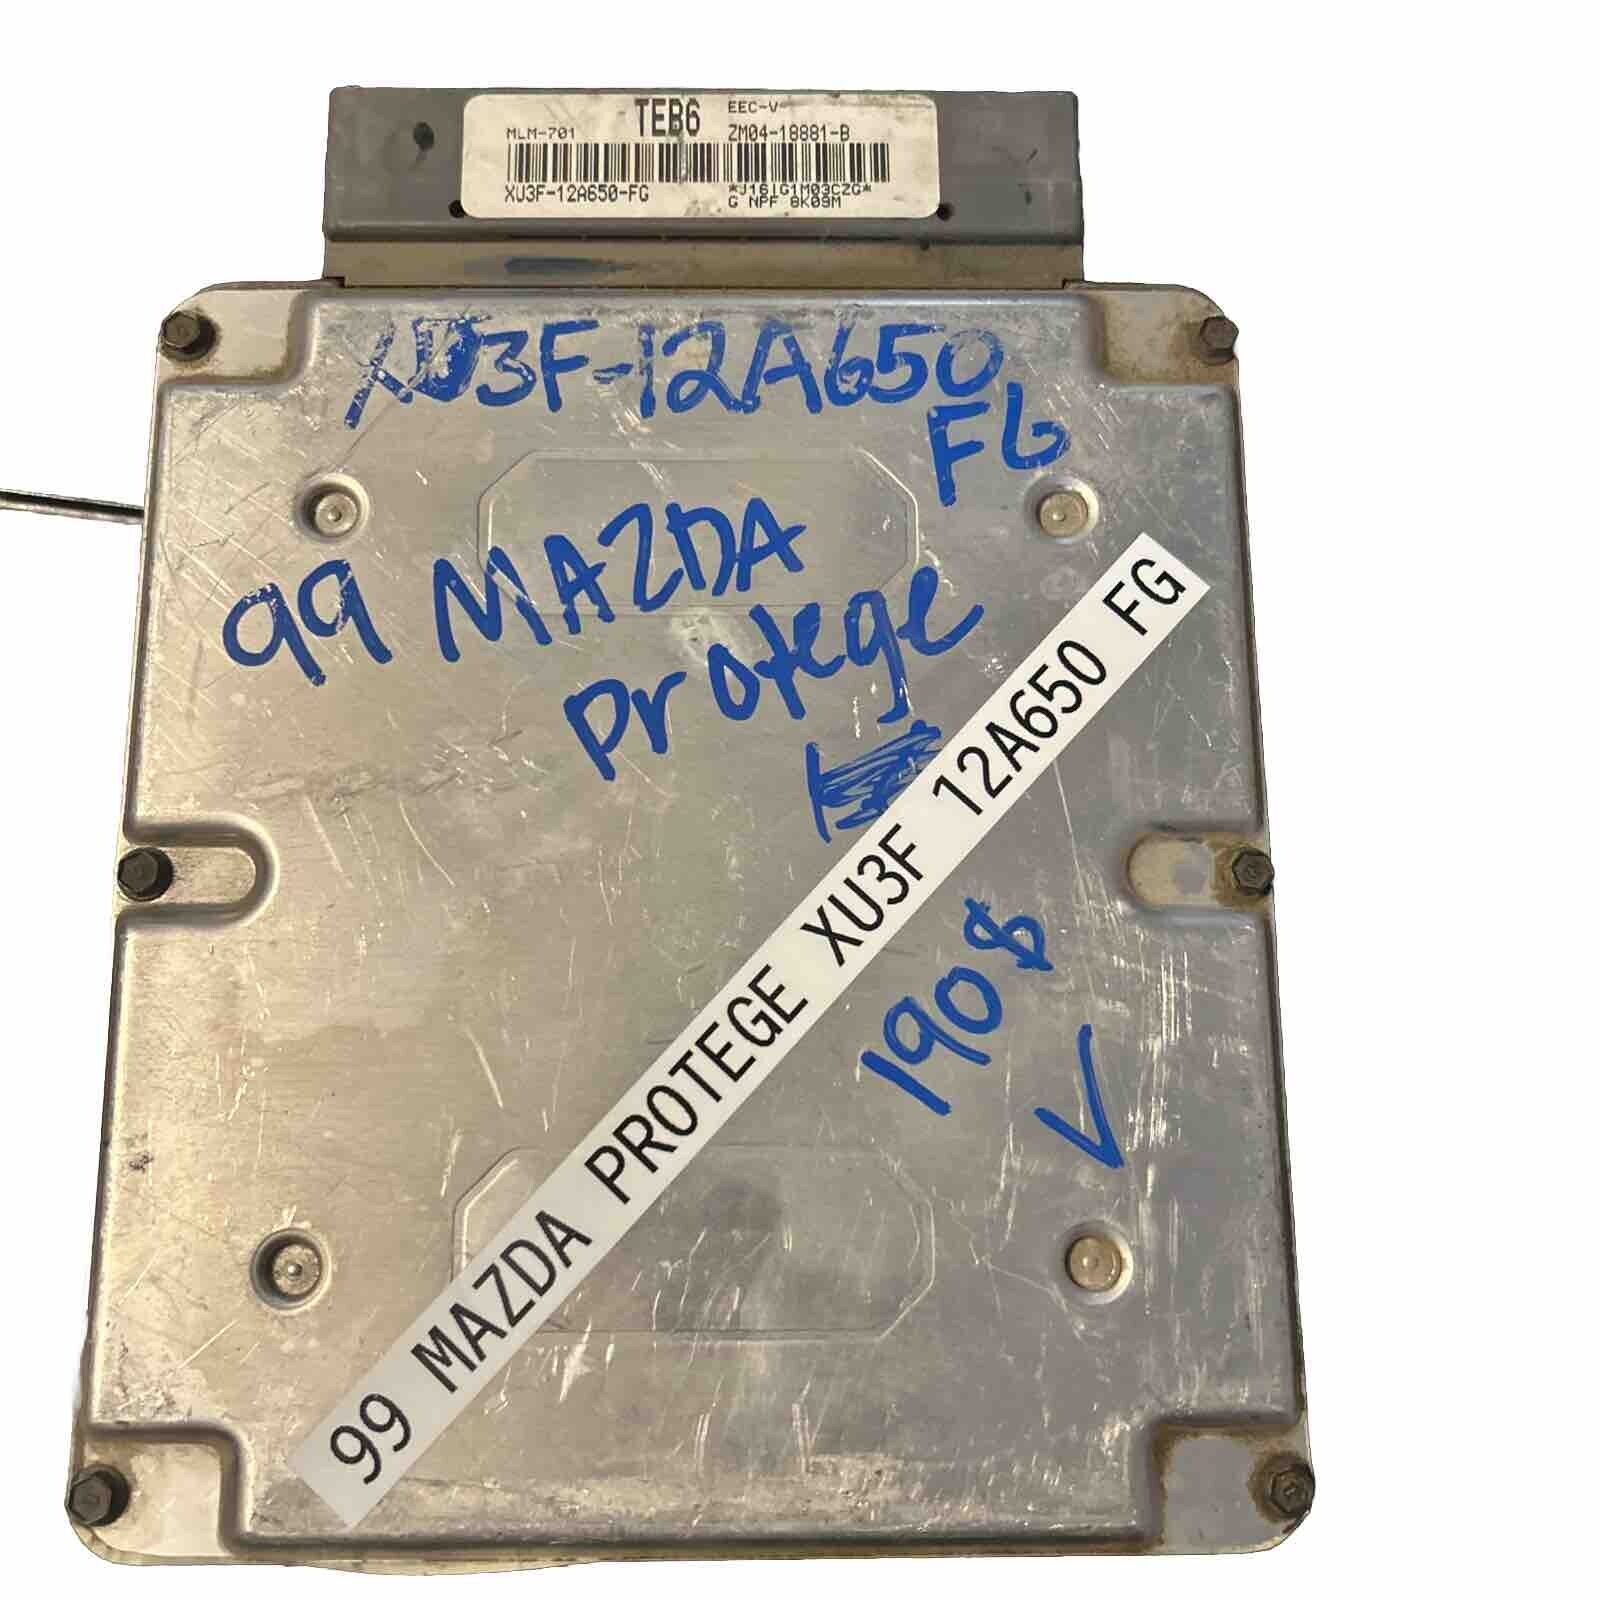 99 Mazda Protege Xu3f-12a650-FG Engine Computer ECM